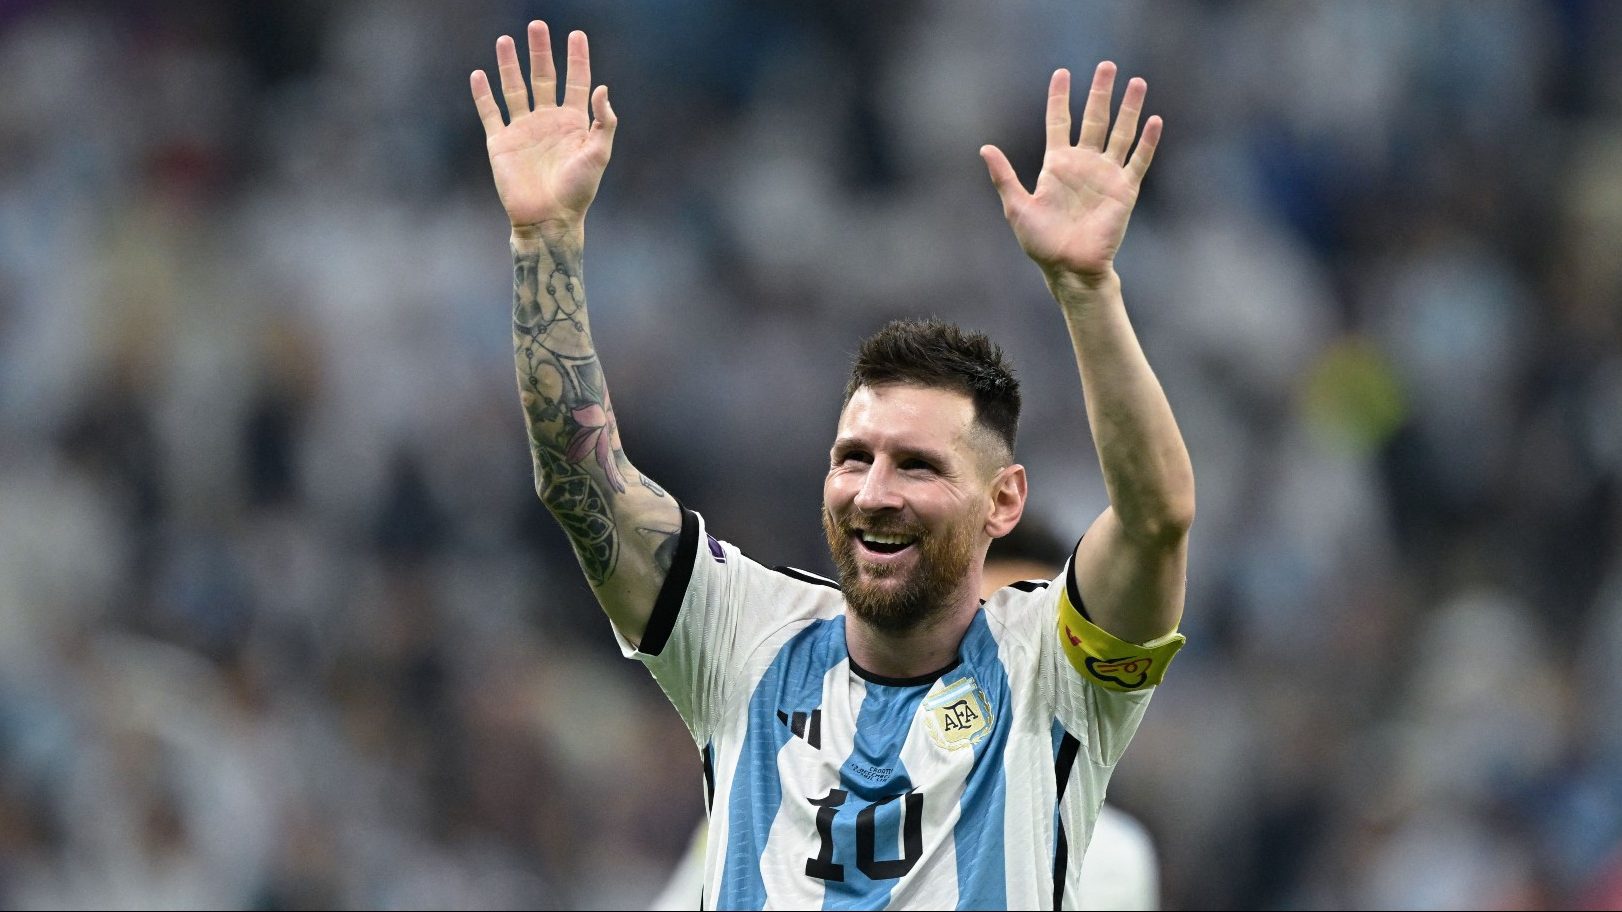 Lionel Messi festeja tras la victoria de Argentina contra Croacia en la semifinal del Mundial de Qatar 2022. (Crédito: JUAN MABROMATA/AFP vía Getty Images)